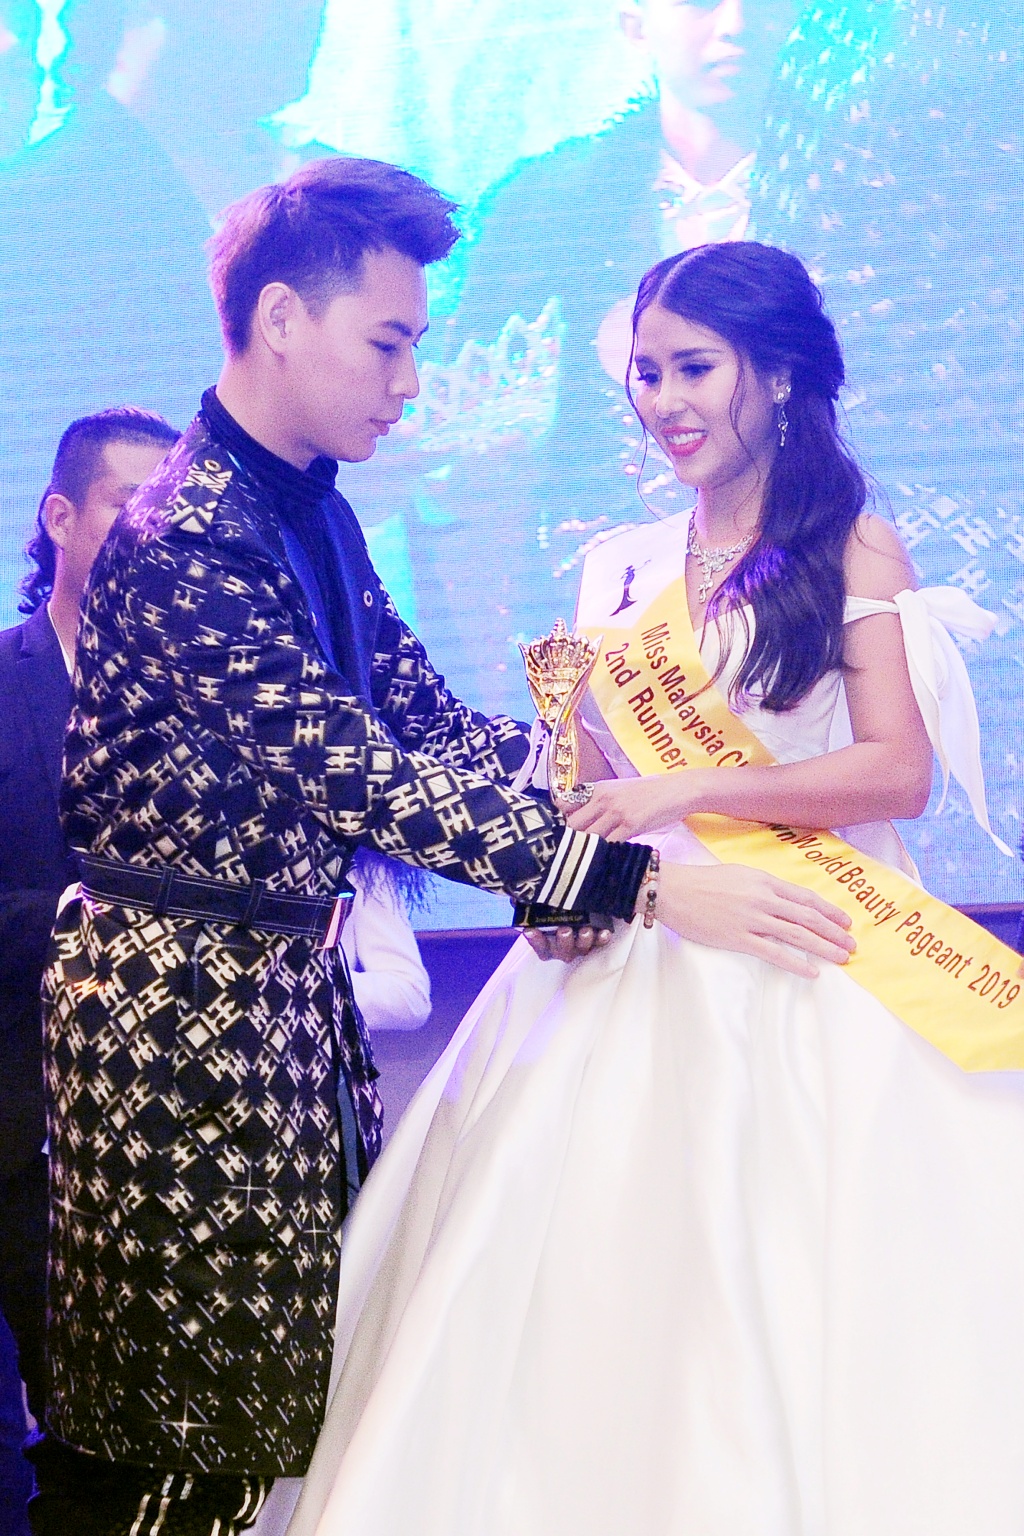  Miss, Mrs & Mr Malaysia Chinatown World Beauty Pageant 2019 rực rỡ sắc màu đêm chung kết tại Malaysia